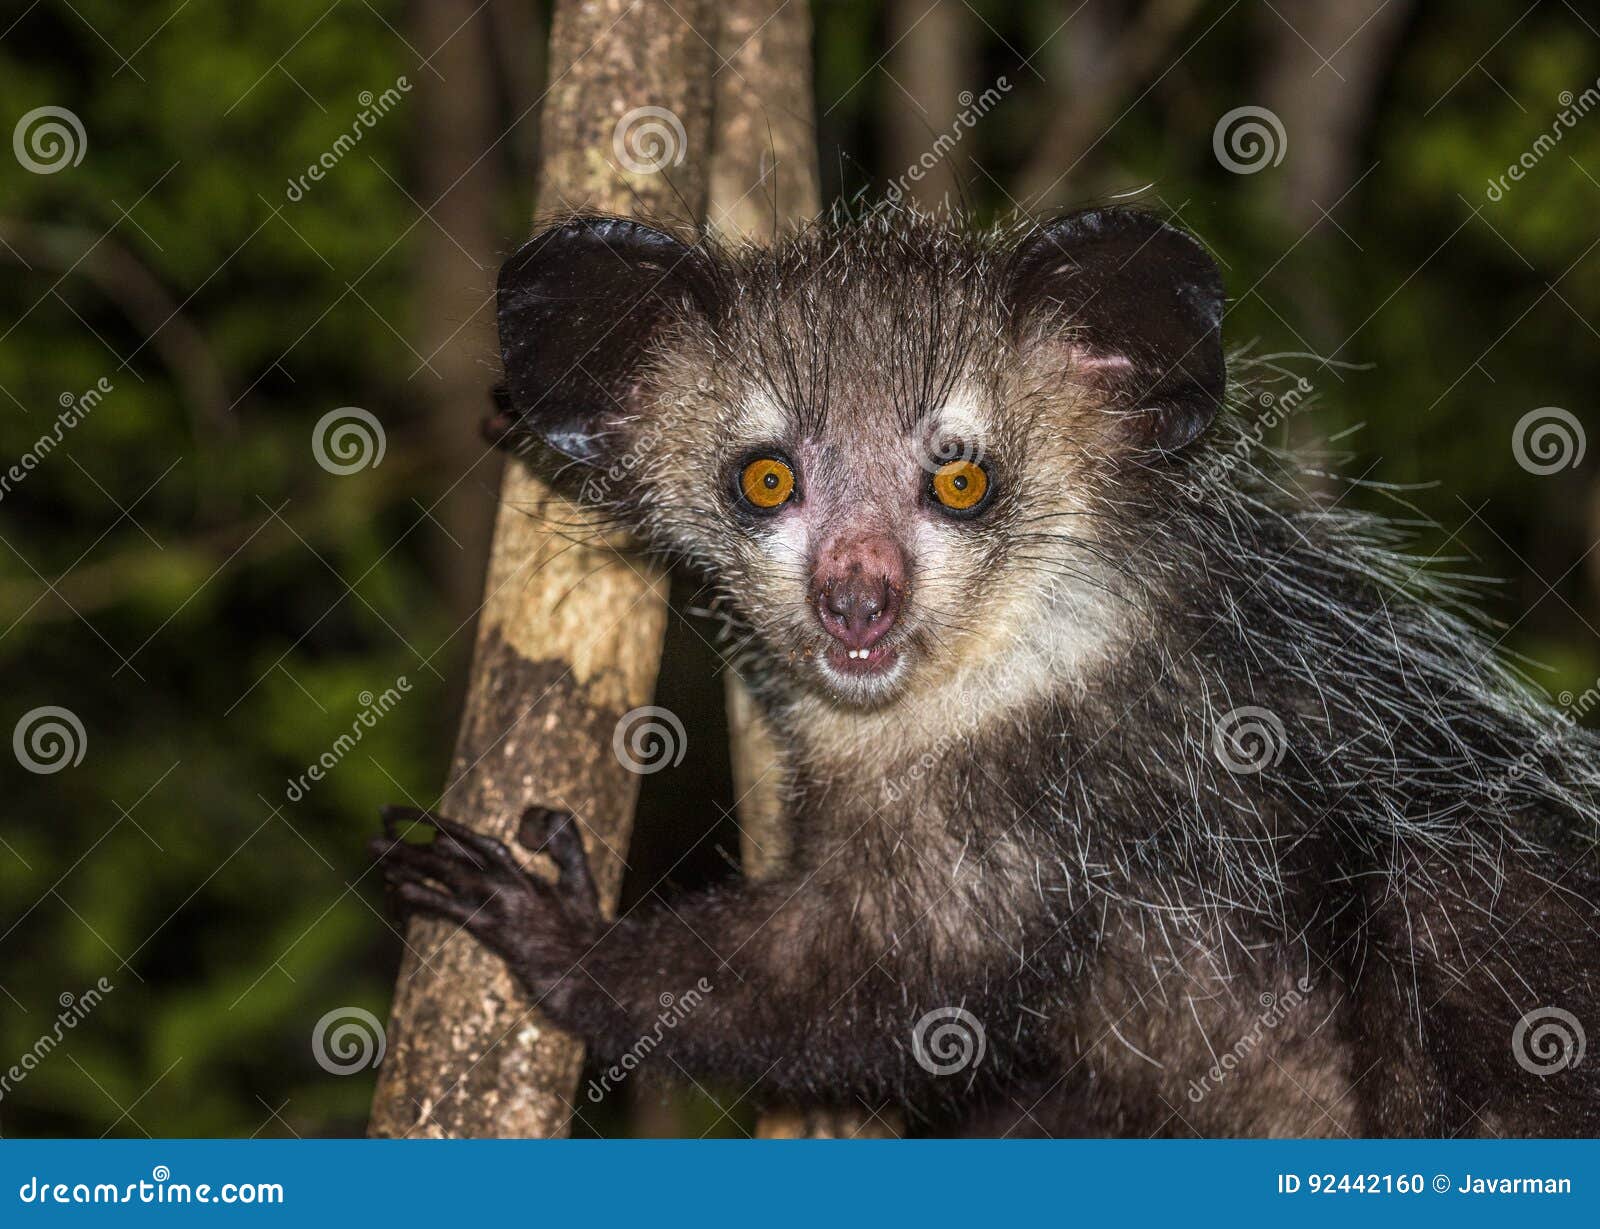 aye-aye, nocturnal lemur of madagascar